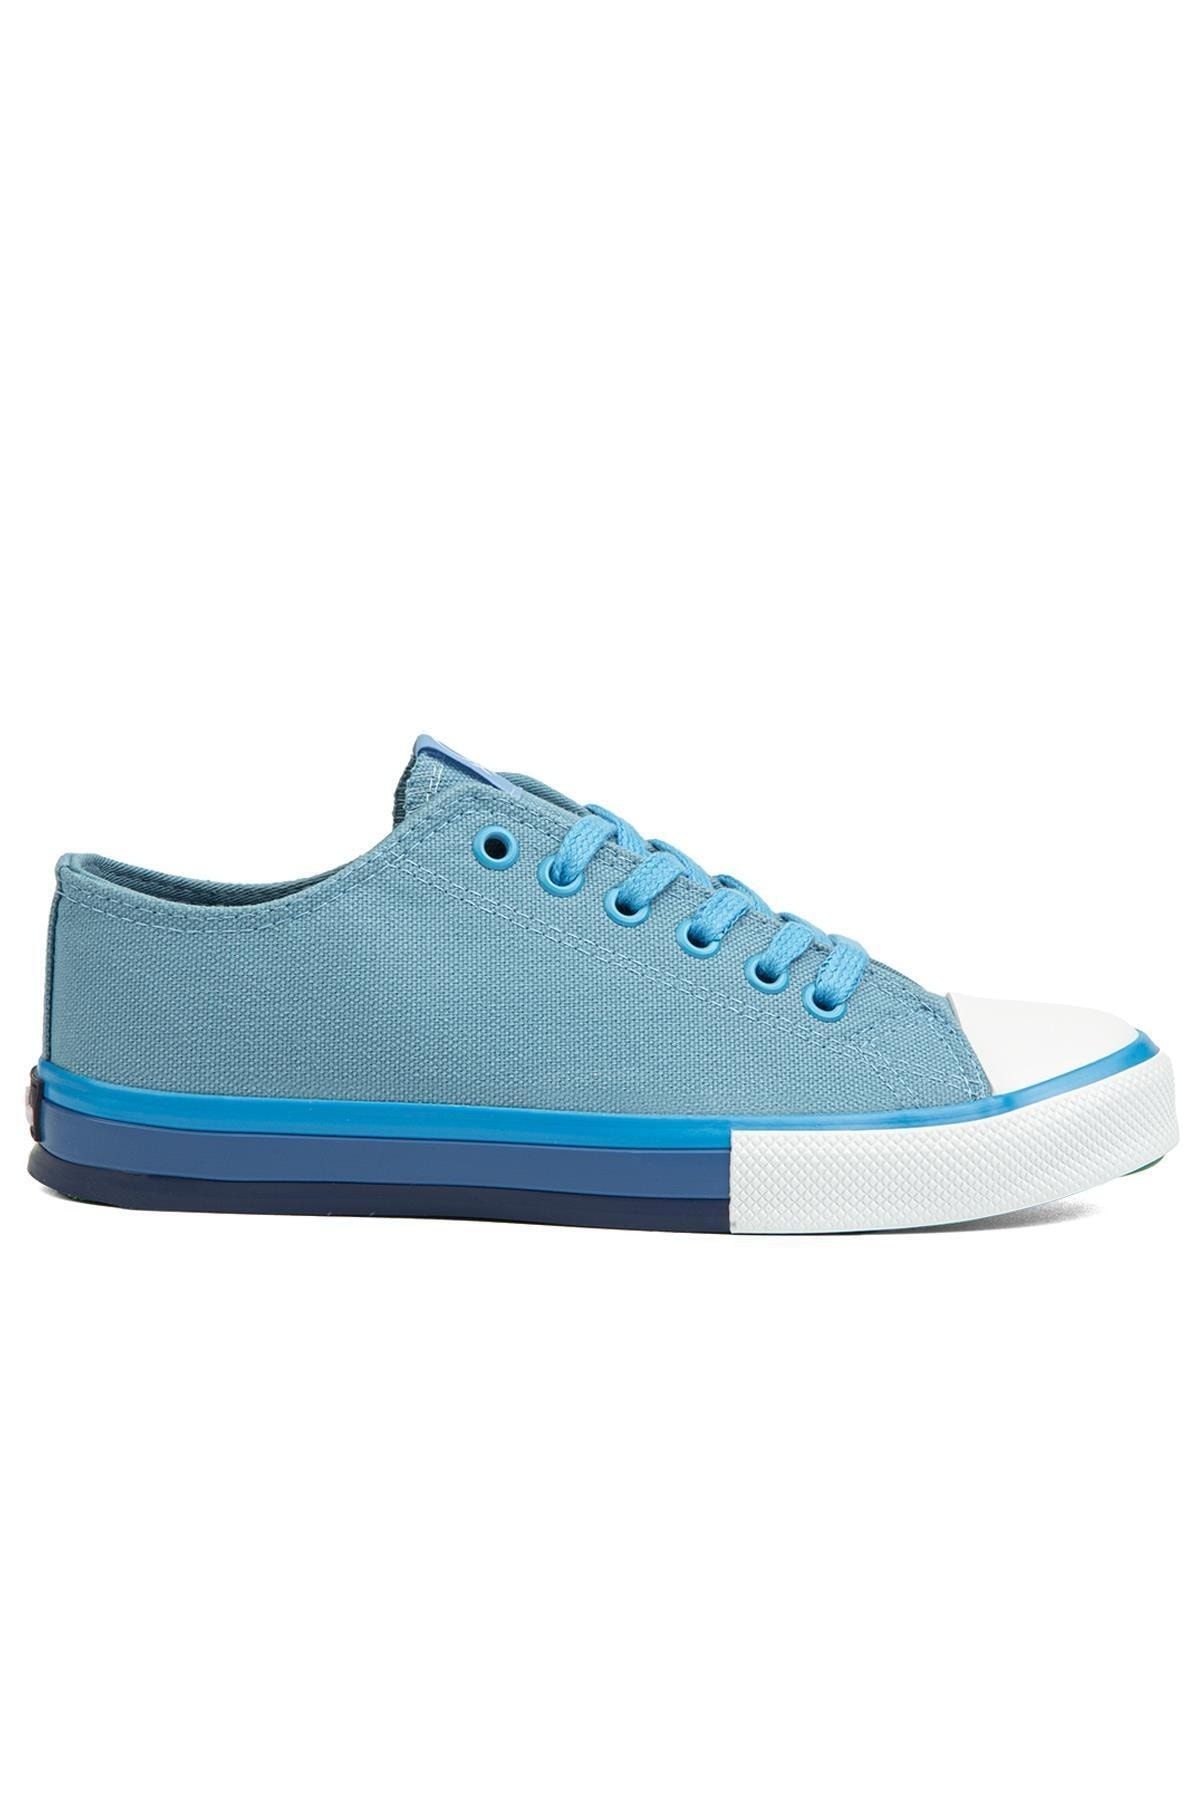 Benetton ® | BN-90191 -Mavi - Erkek Spor Ayakkabı